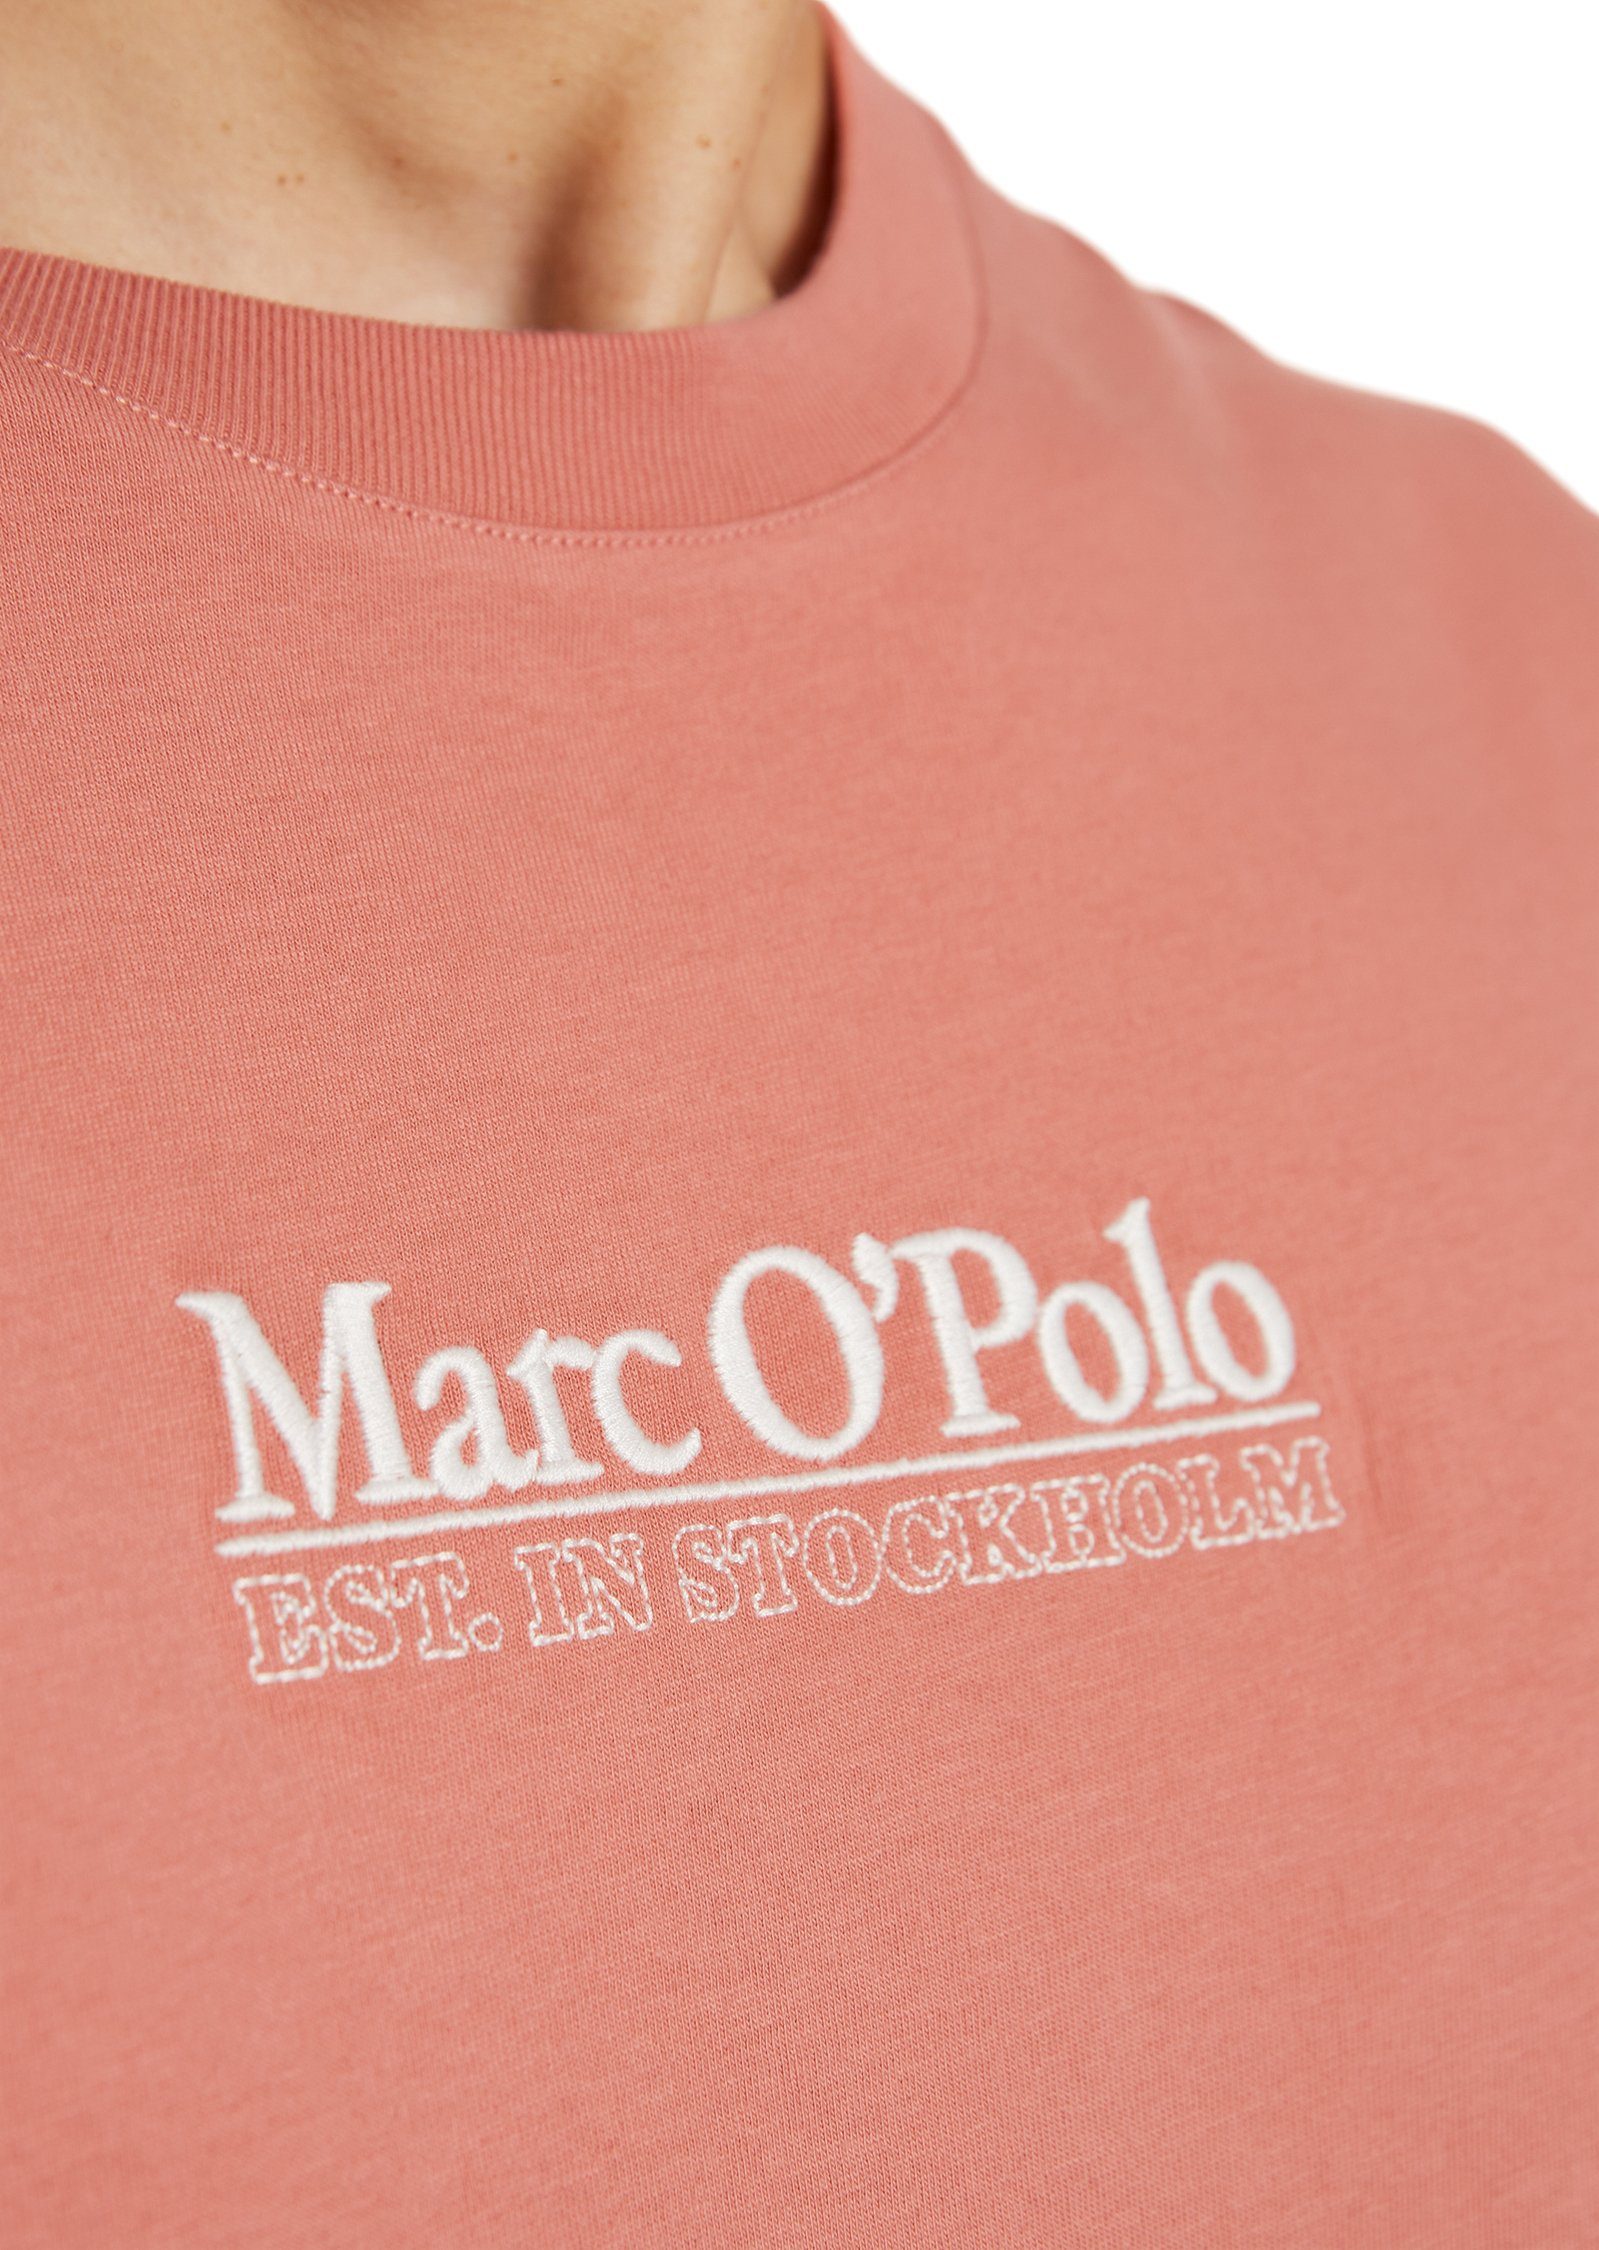 Marc O'Polo T-Shirt rose flushed